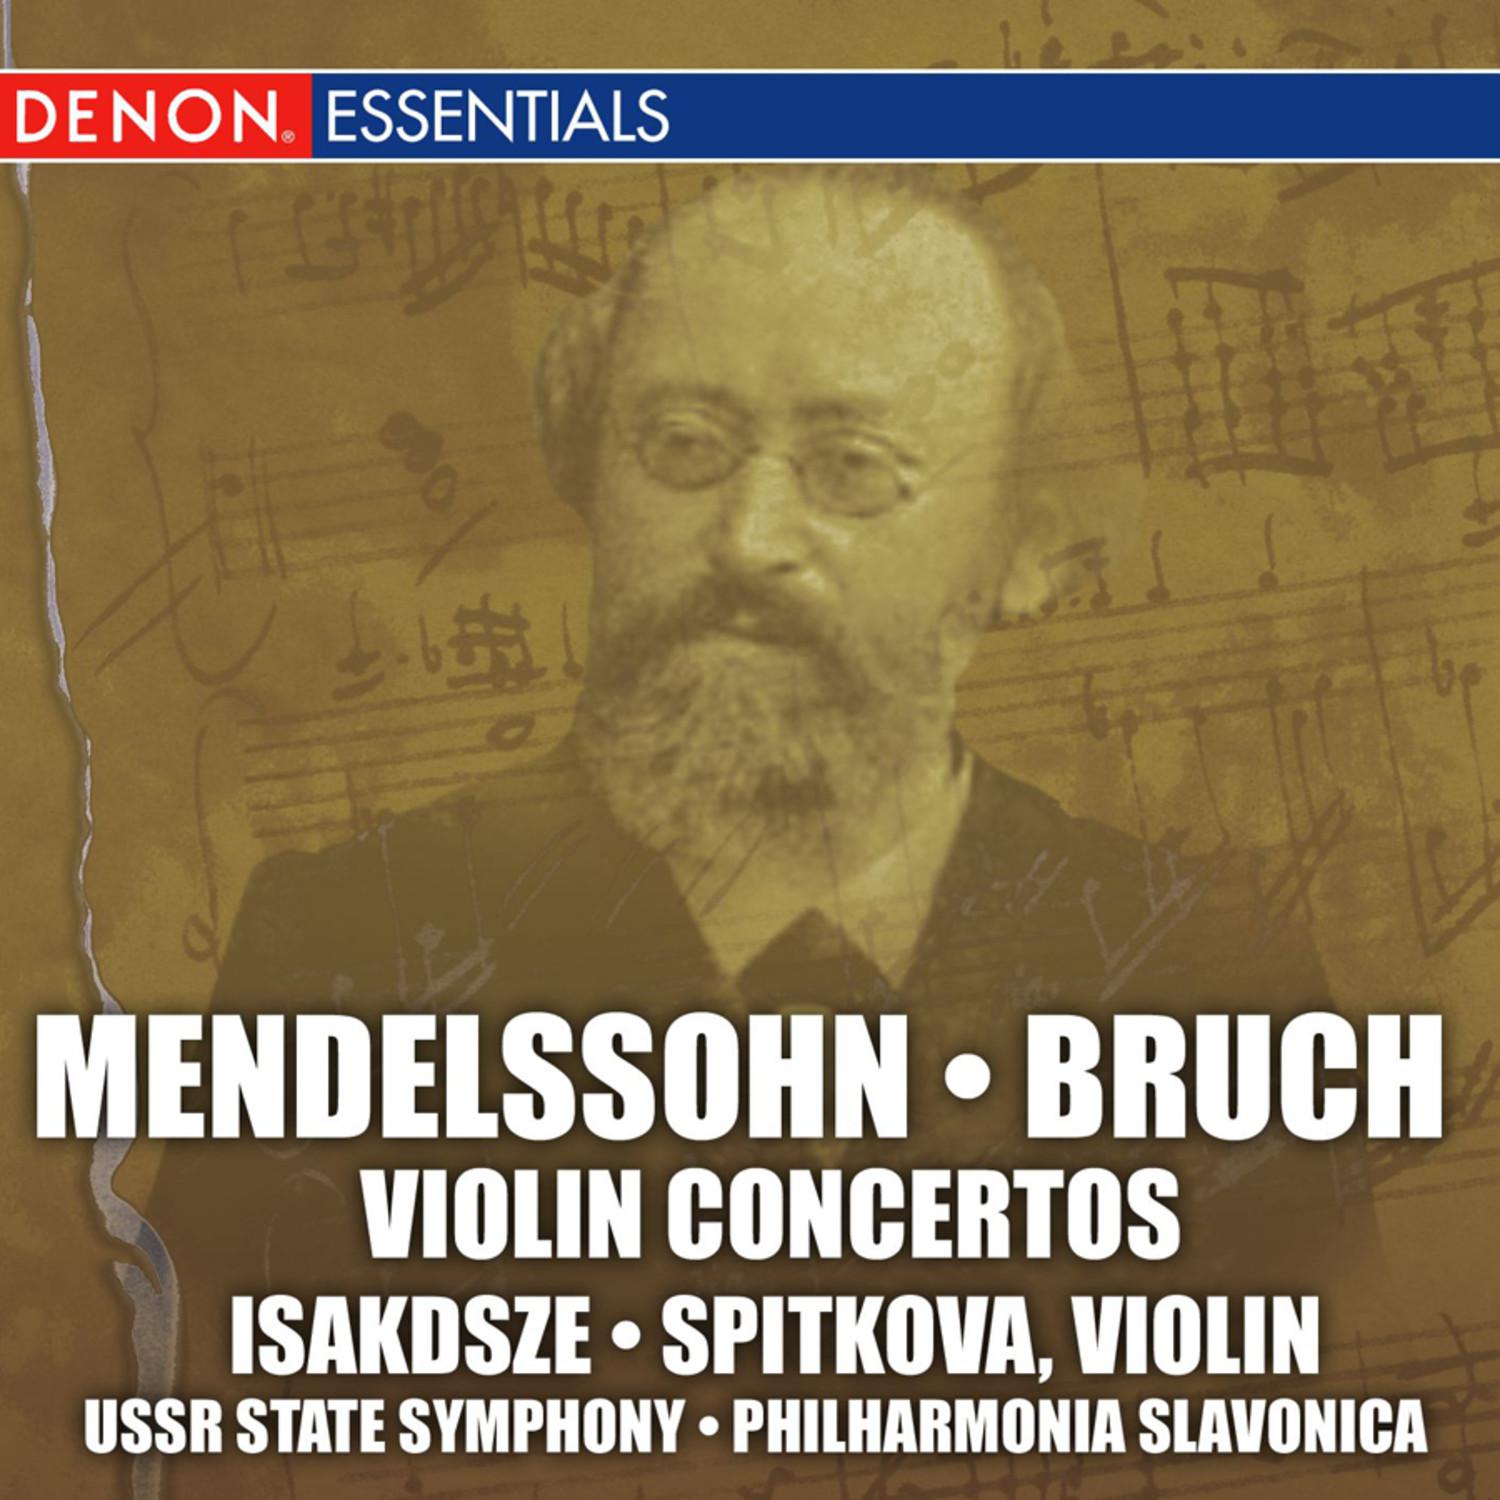 Concerto for Violin and Orchestra in E Minor, Op. 64: III. Allegretto non troppo - Allegro molto vivace